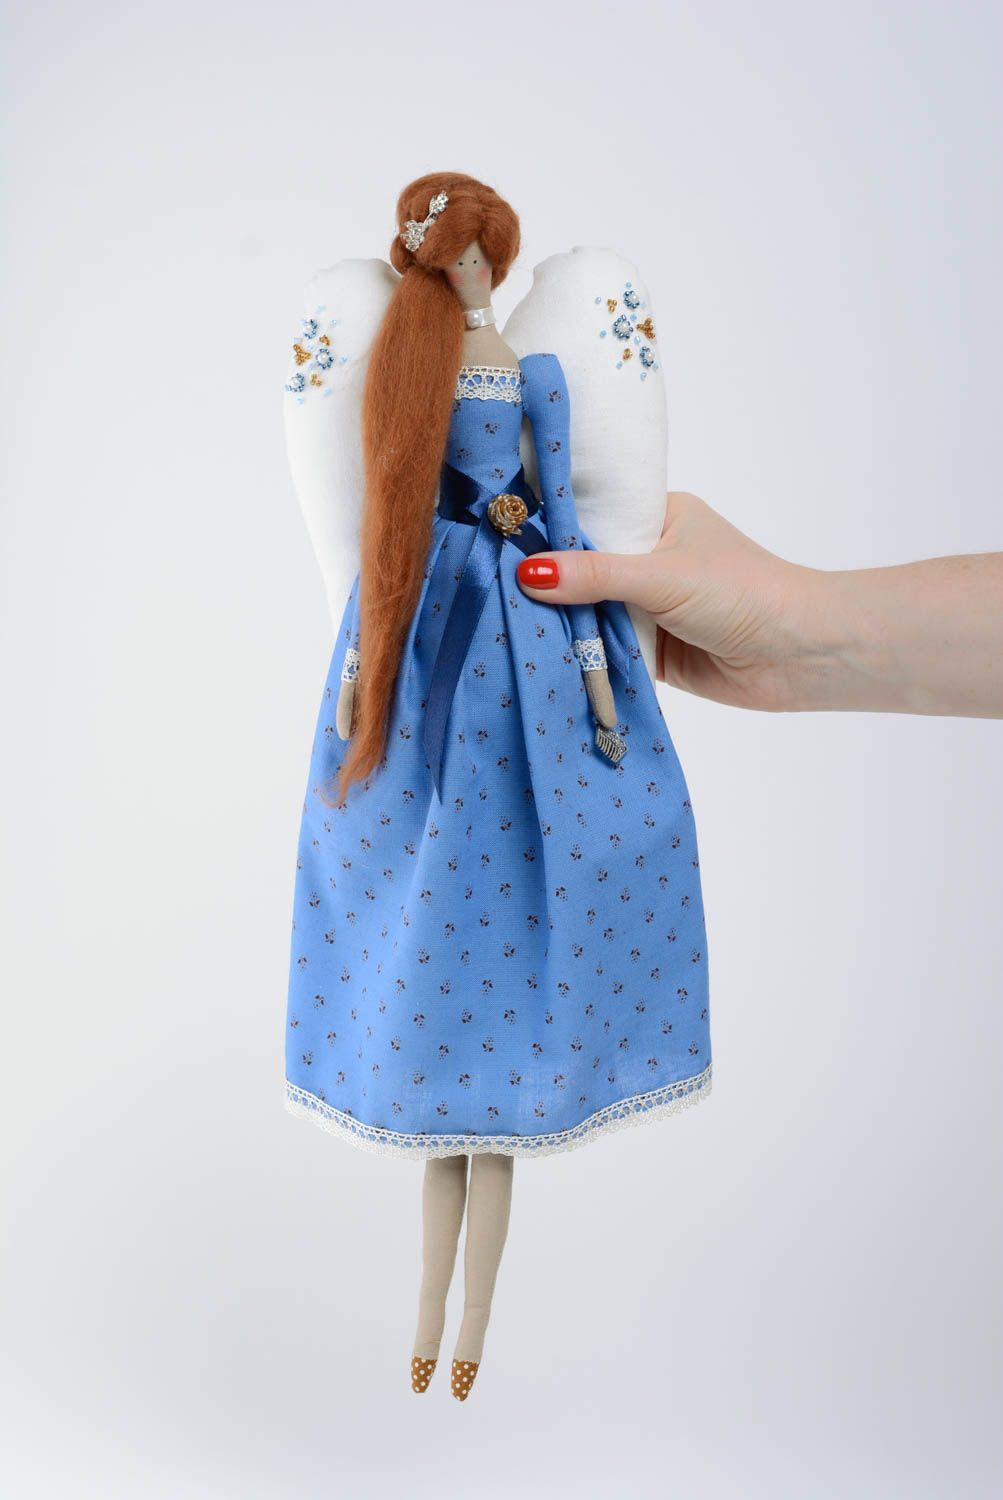 Тканевая игрушка из хлопка мягкая красивая детская ручной работы Ангел в платье фото 4